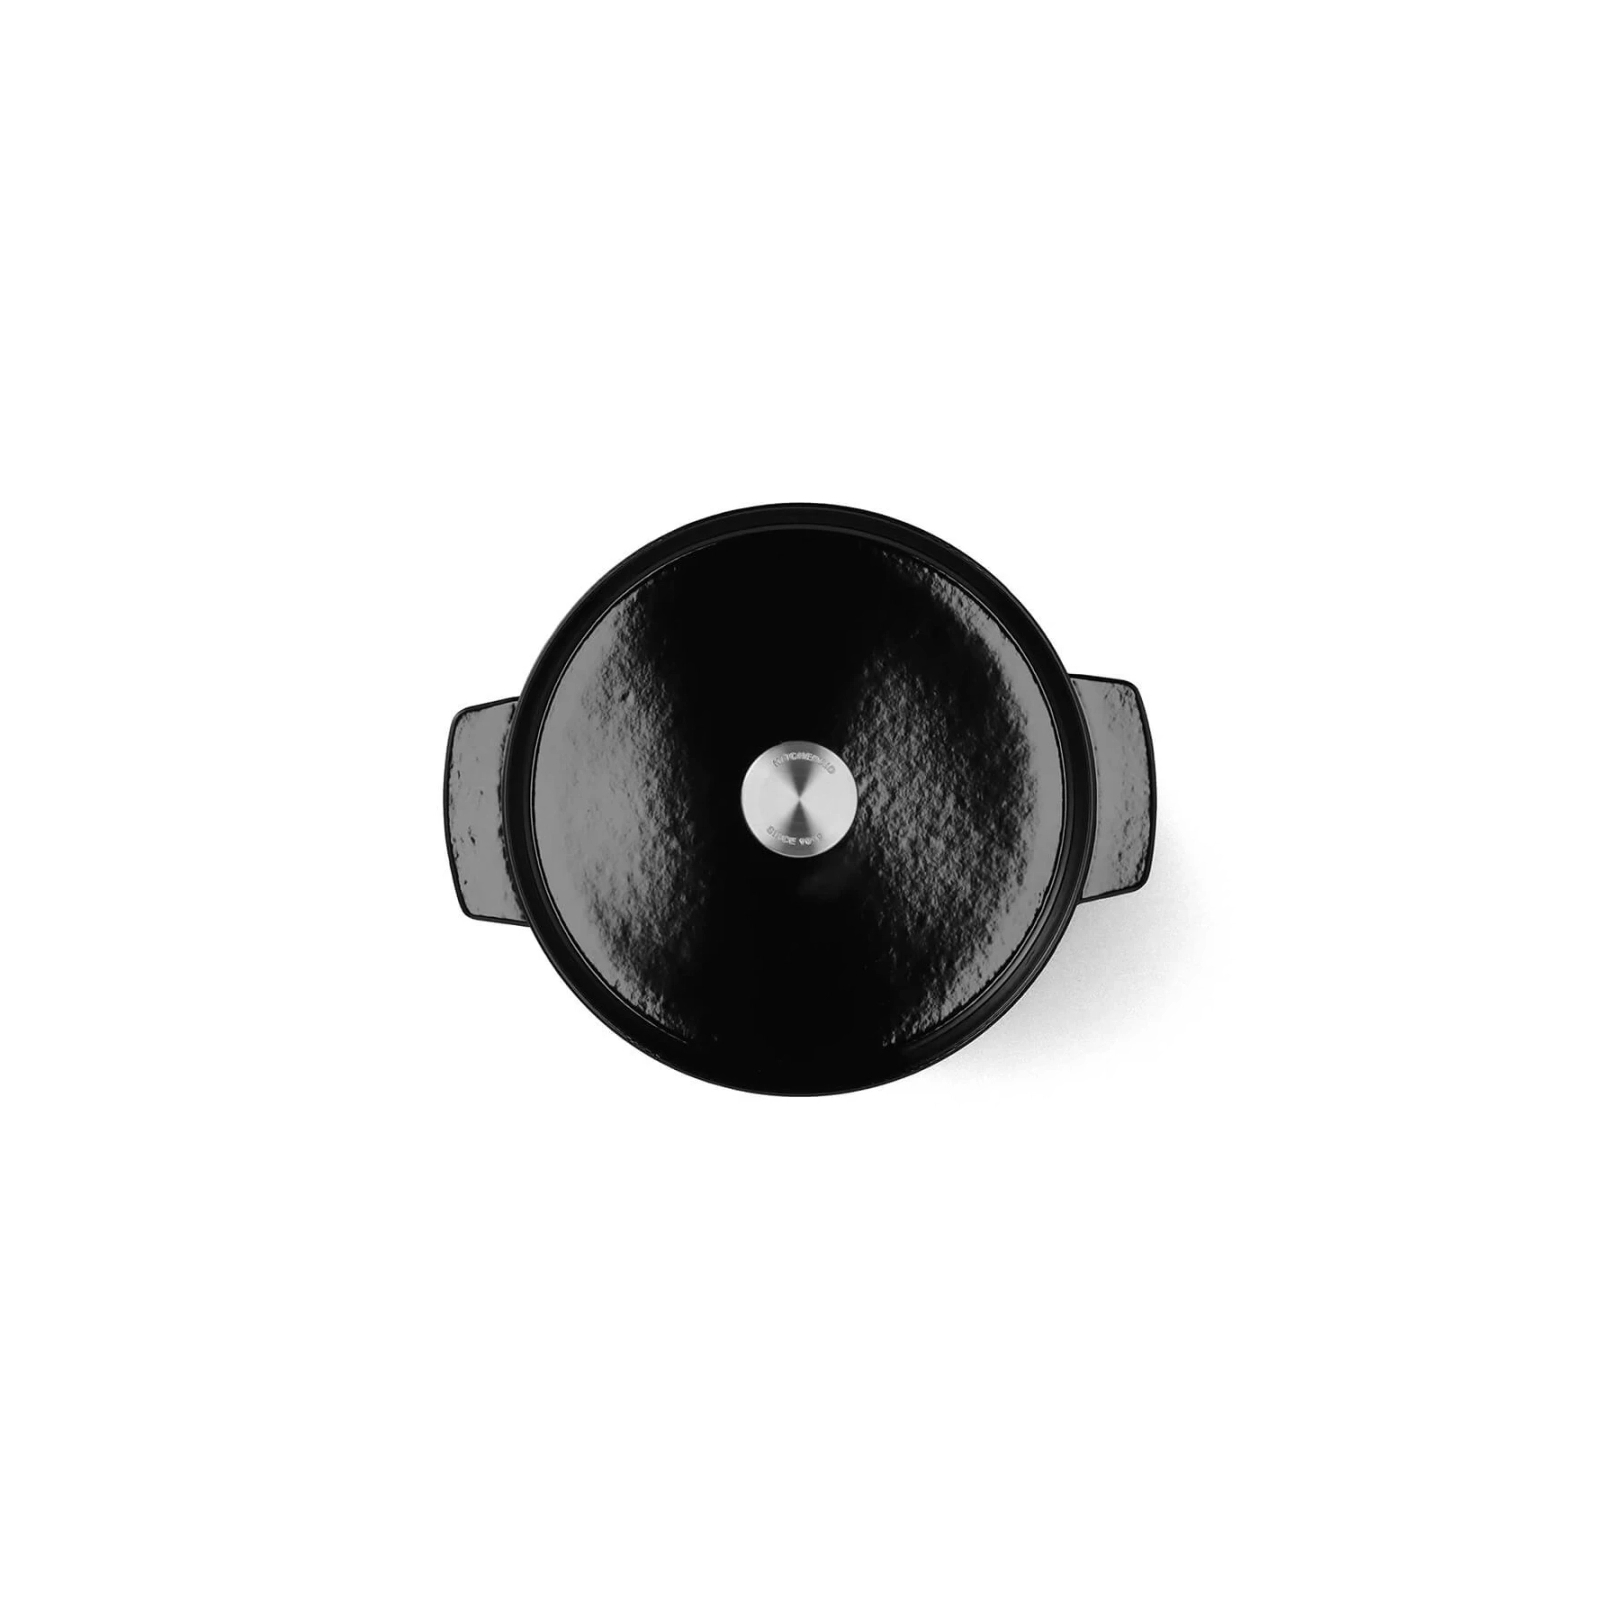 Каструля KitchenAid чавунна з кришкою 3,3 л Чорна (CC006058-001) зображення 2